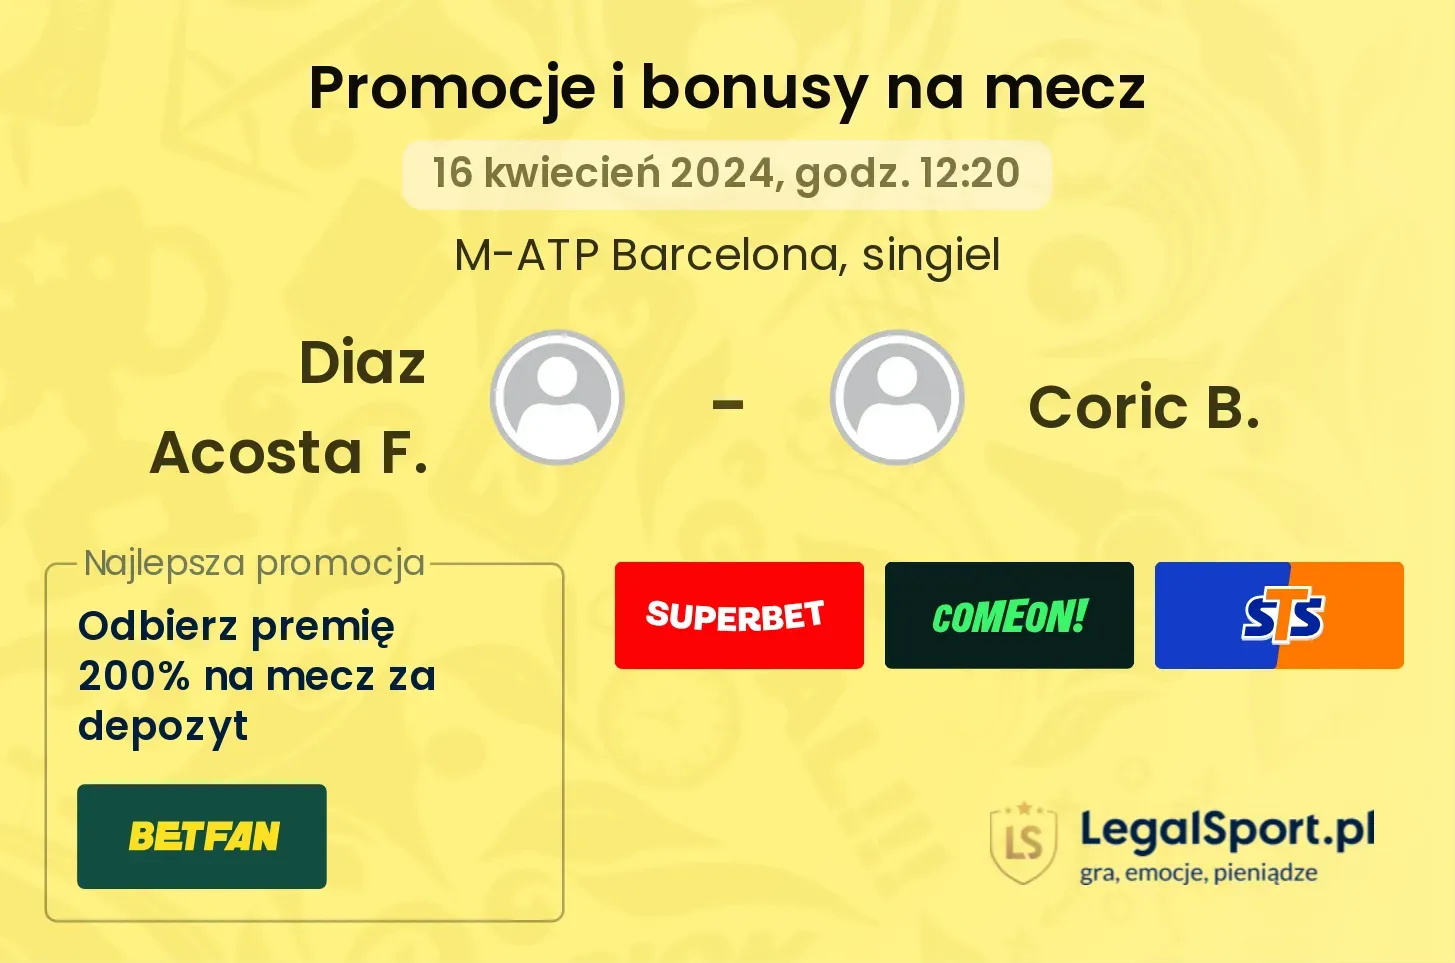 Diaz Acosta F. - Coric B. promocje bonusy na mecz